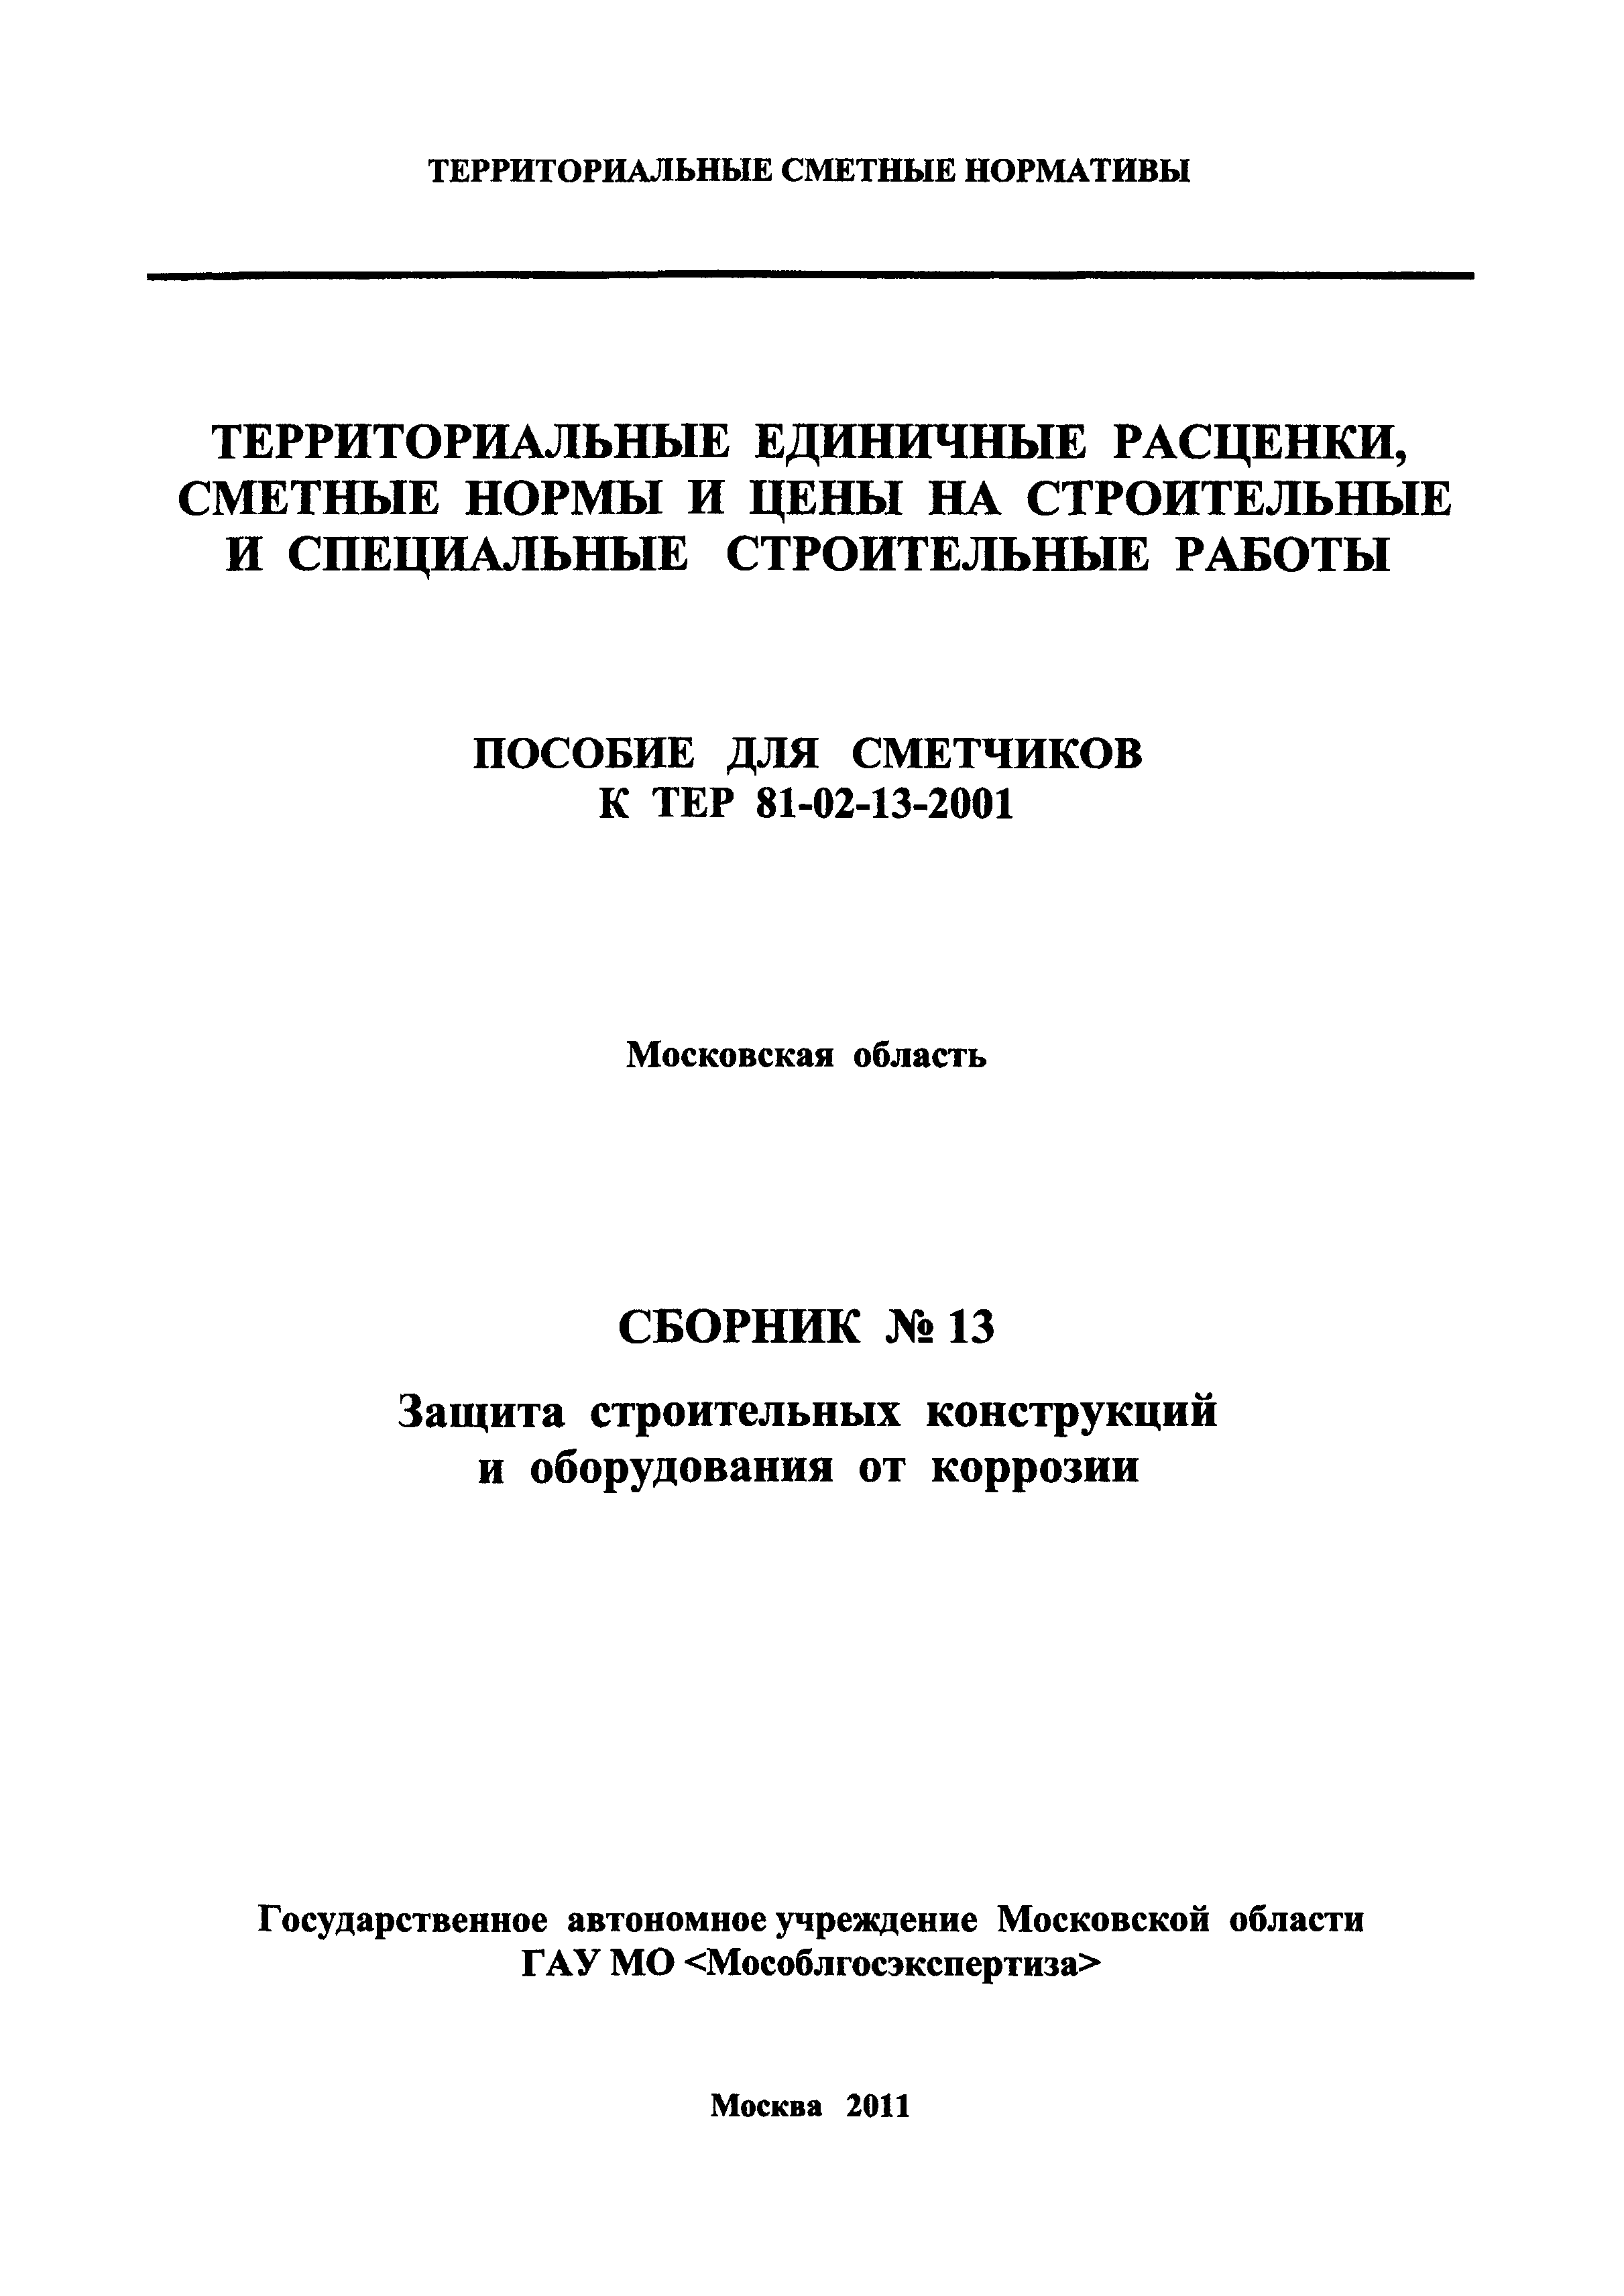 ГЭСНПиТЕР 2001-13 Московской области